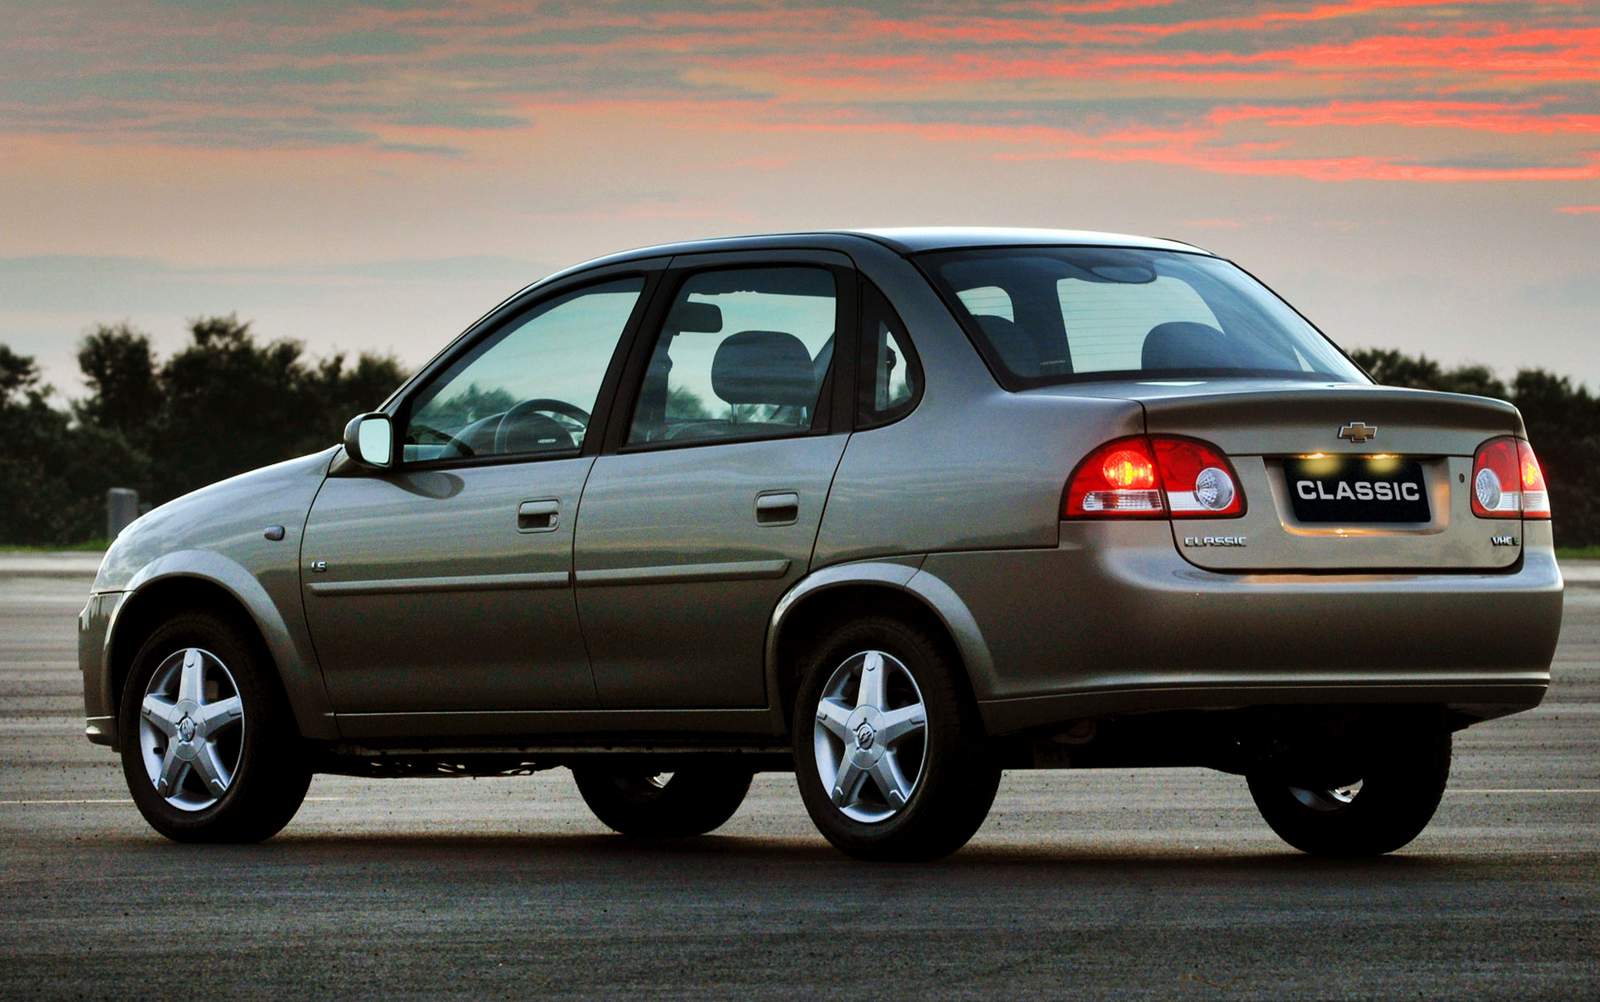 Chevrolet Corsa Sedan 2009, uma boa opção para famílias! Confiável